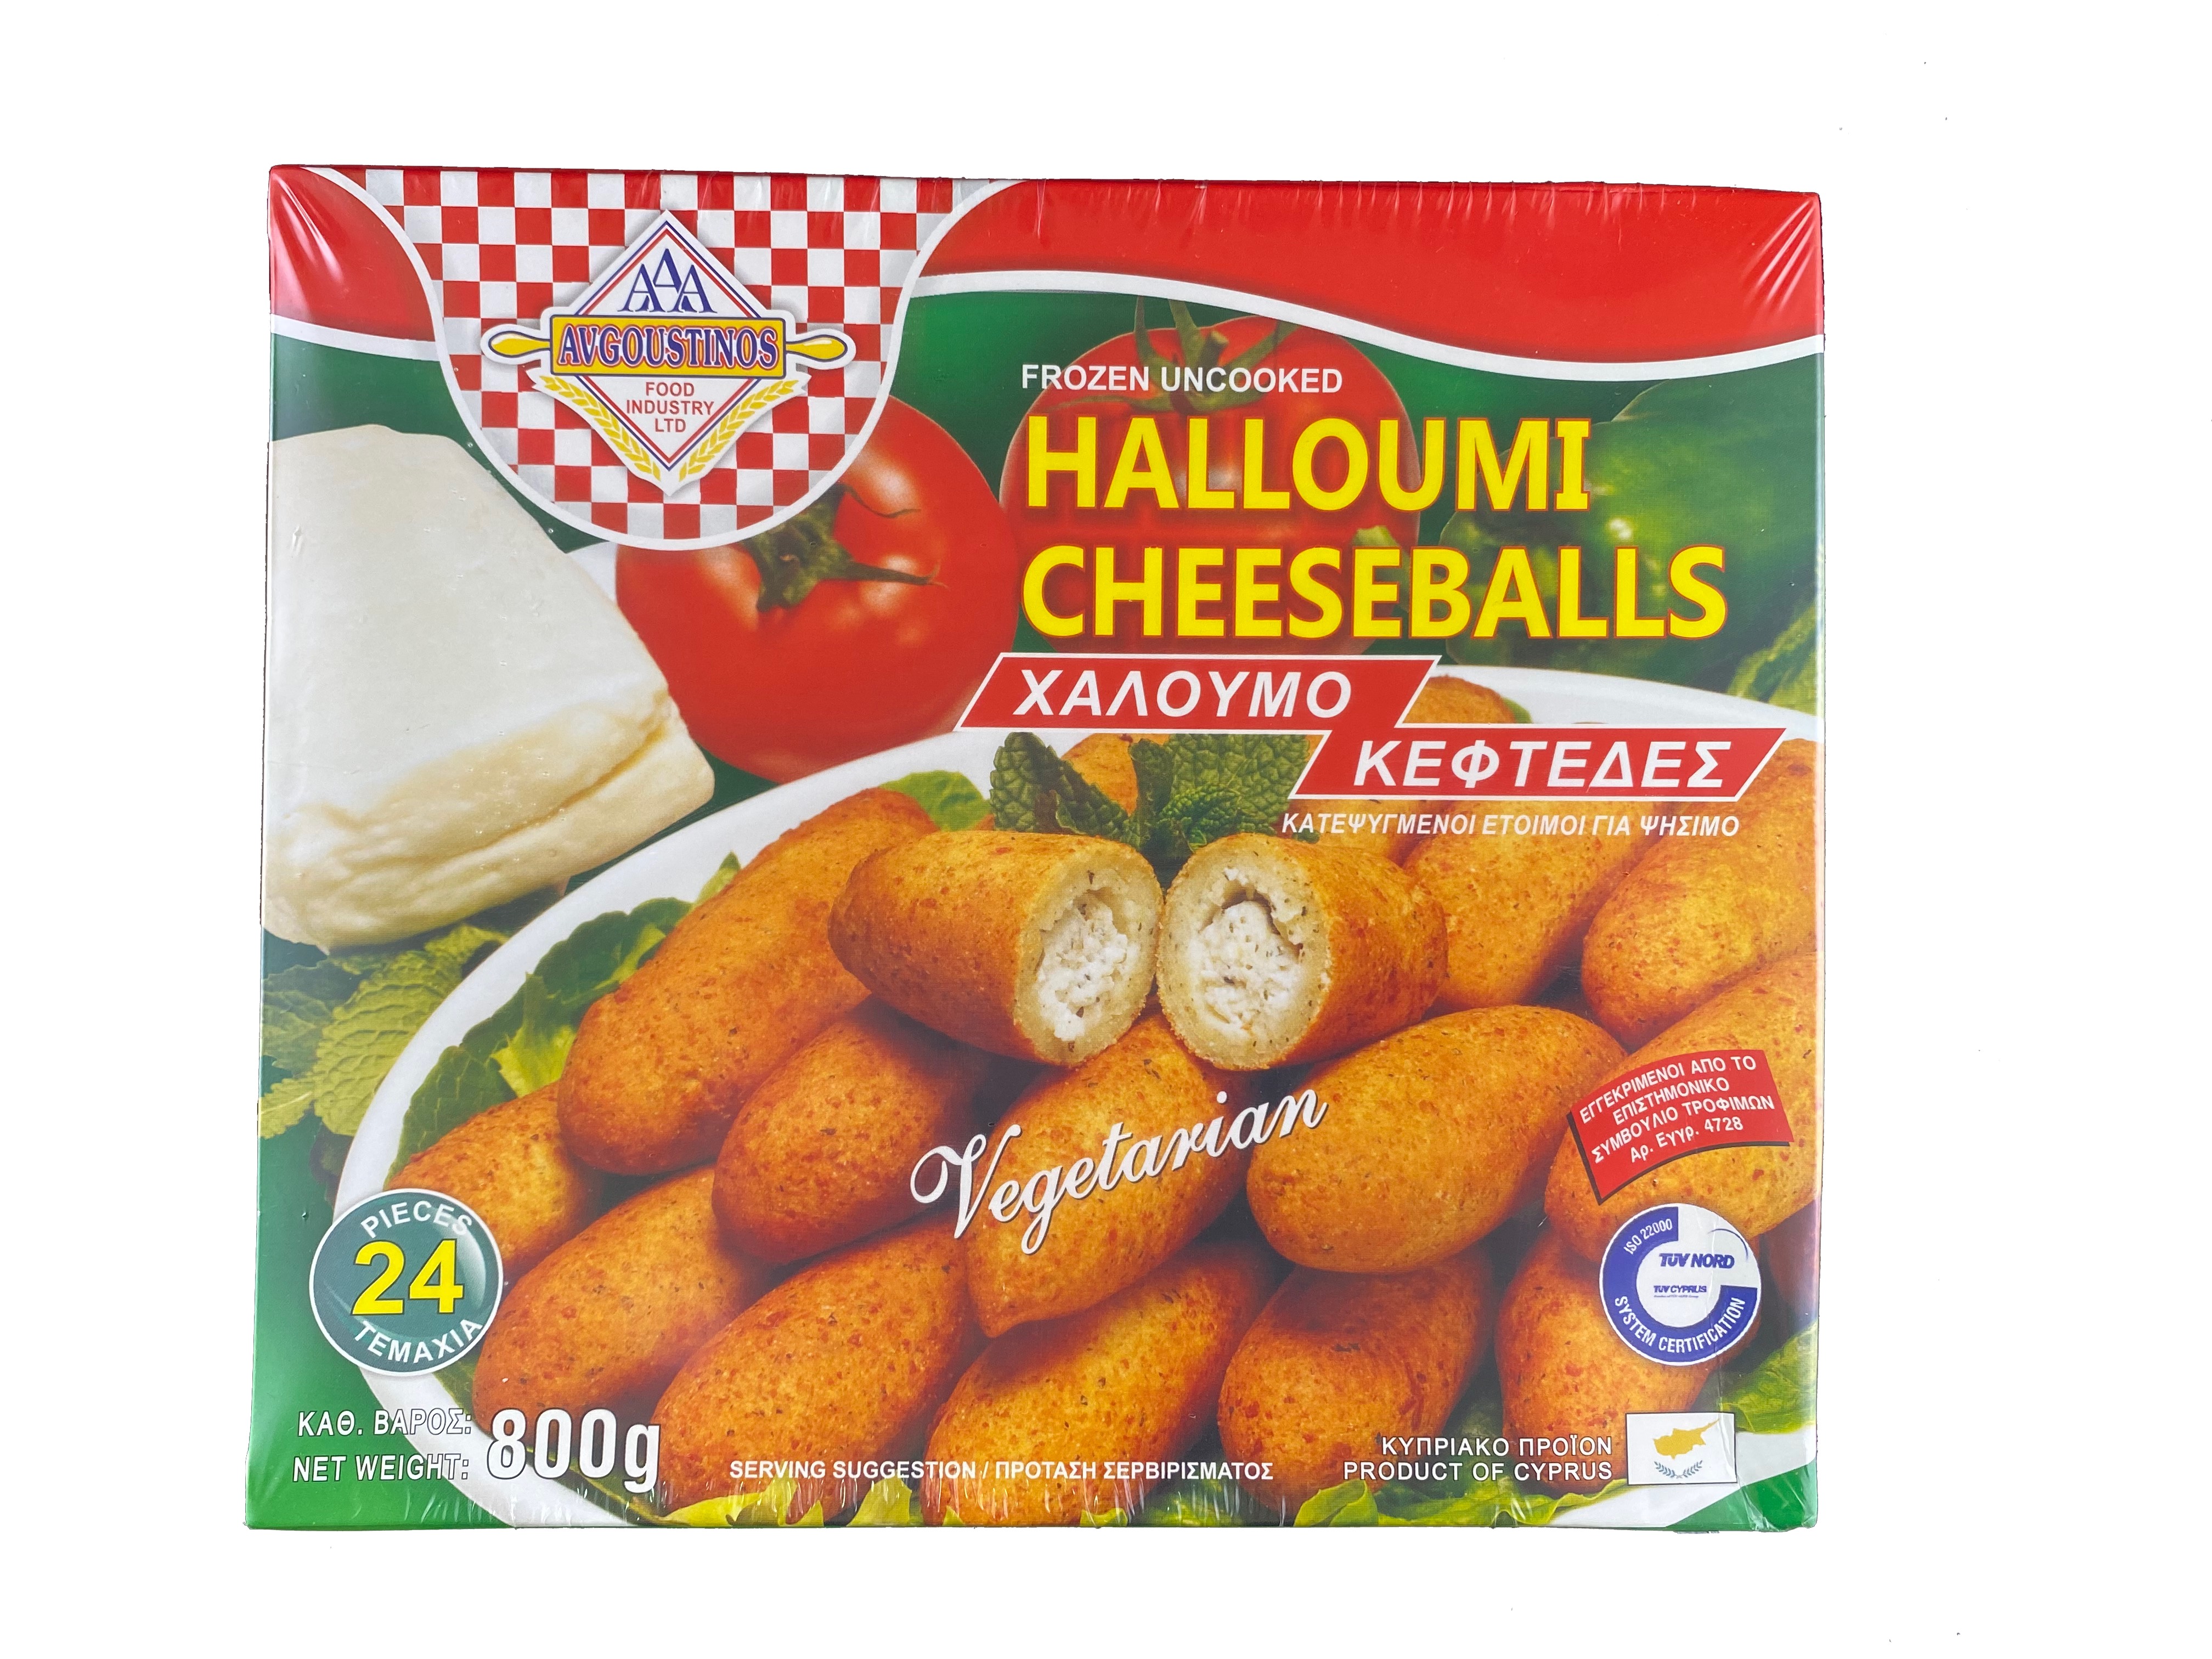 Halloumi Cheeseballs